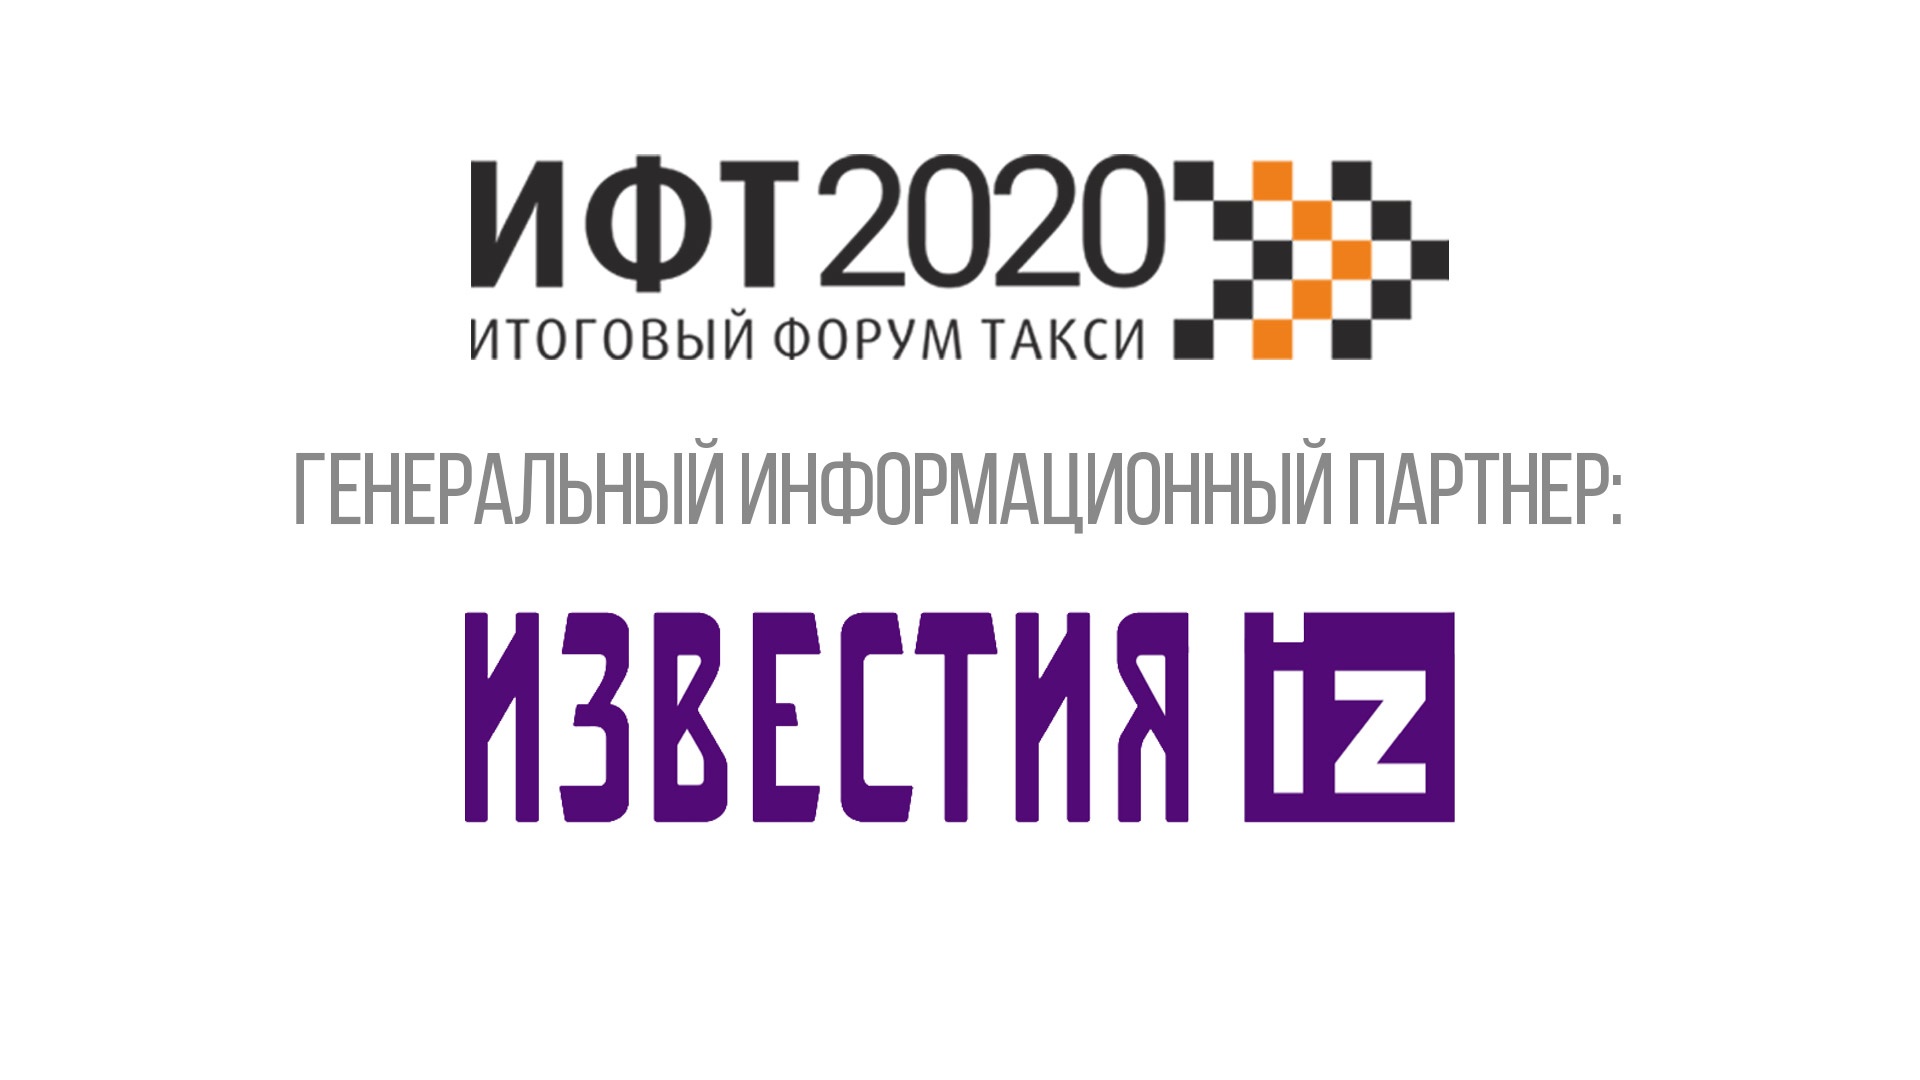 Партнером III Итогового форума такси 2020 стали «Известия»